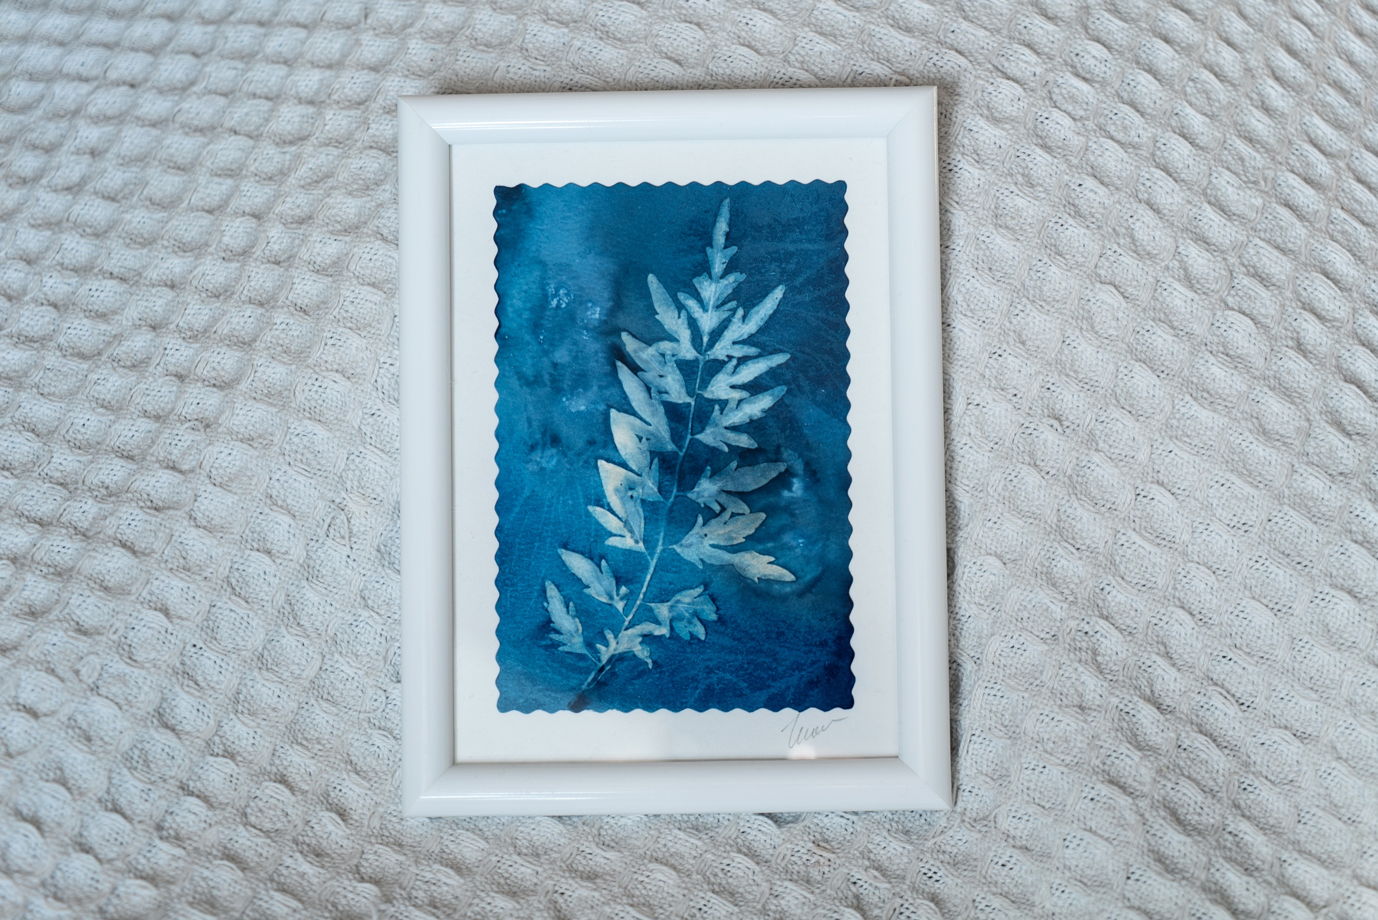 Фотограмма "Ажурный лист" в технике   wet cyanotype